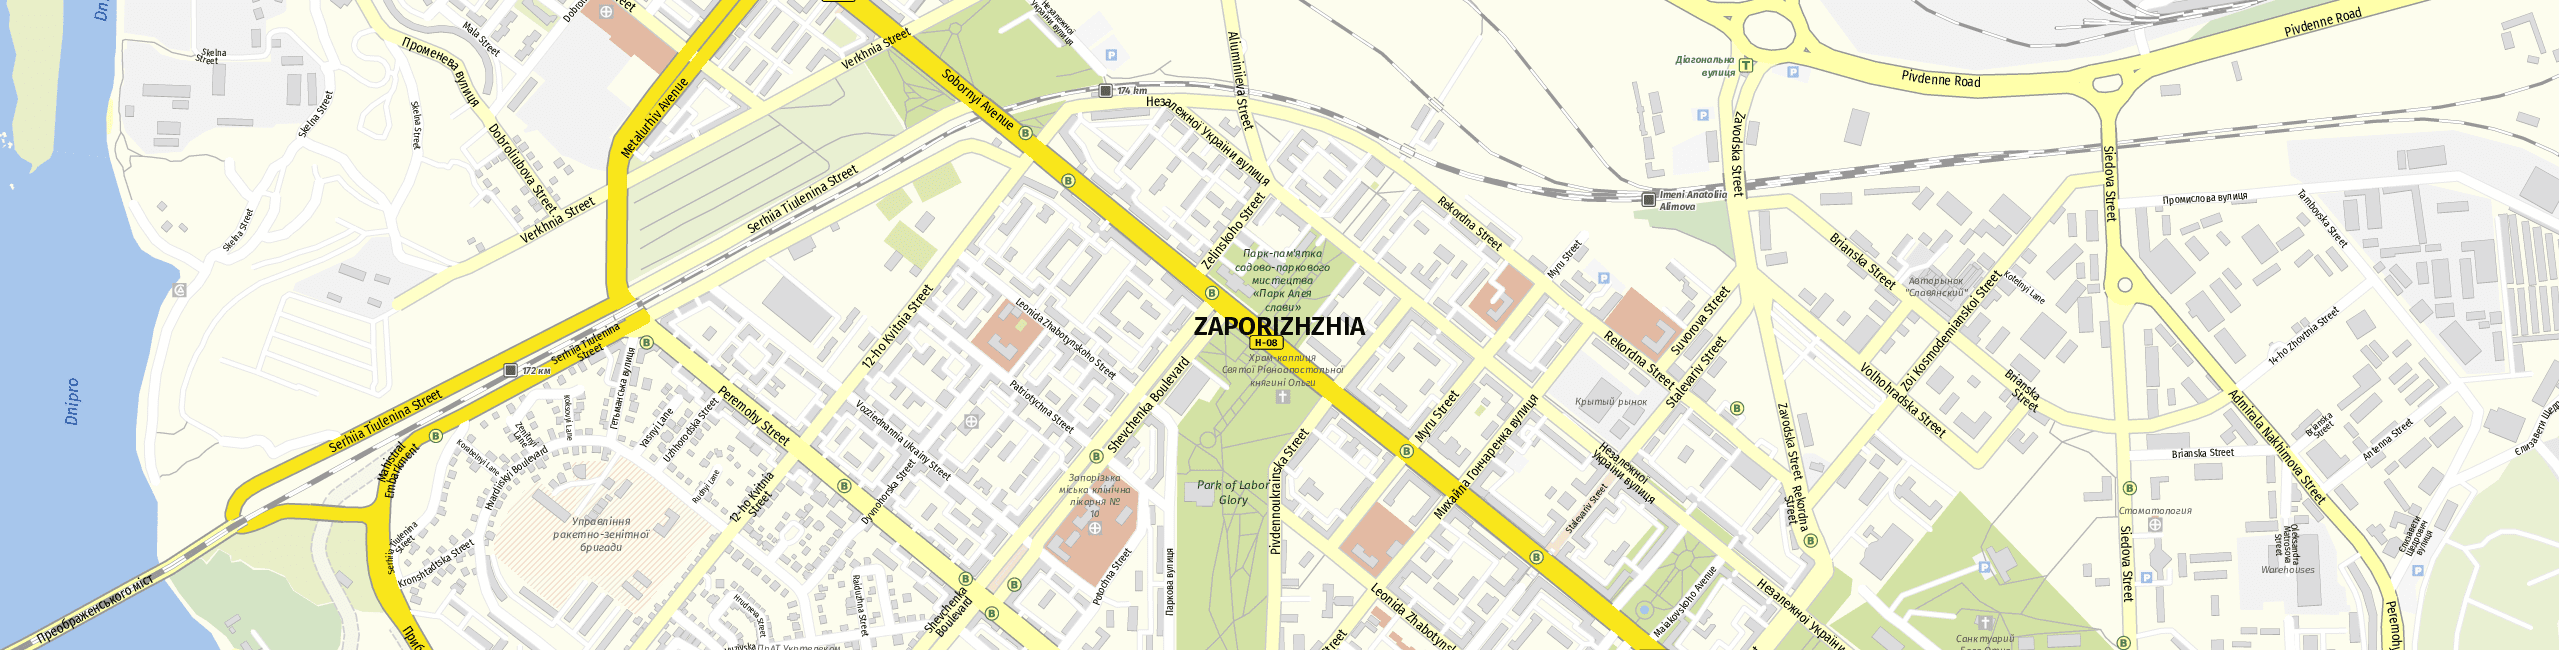 Stadtplan Zaporizhzhia zum Downloaden.